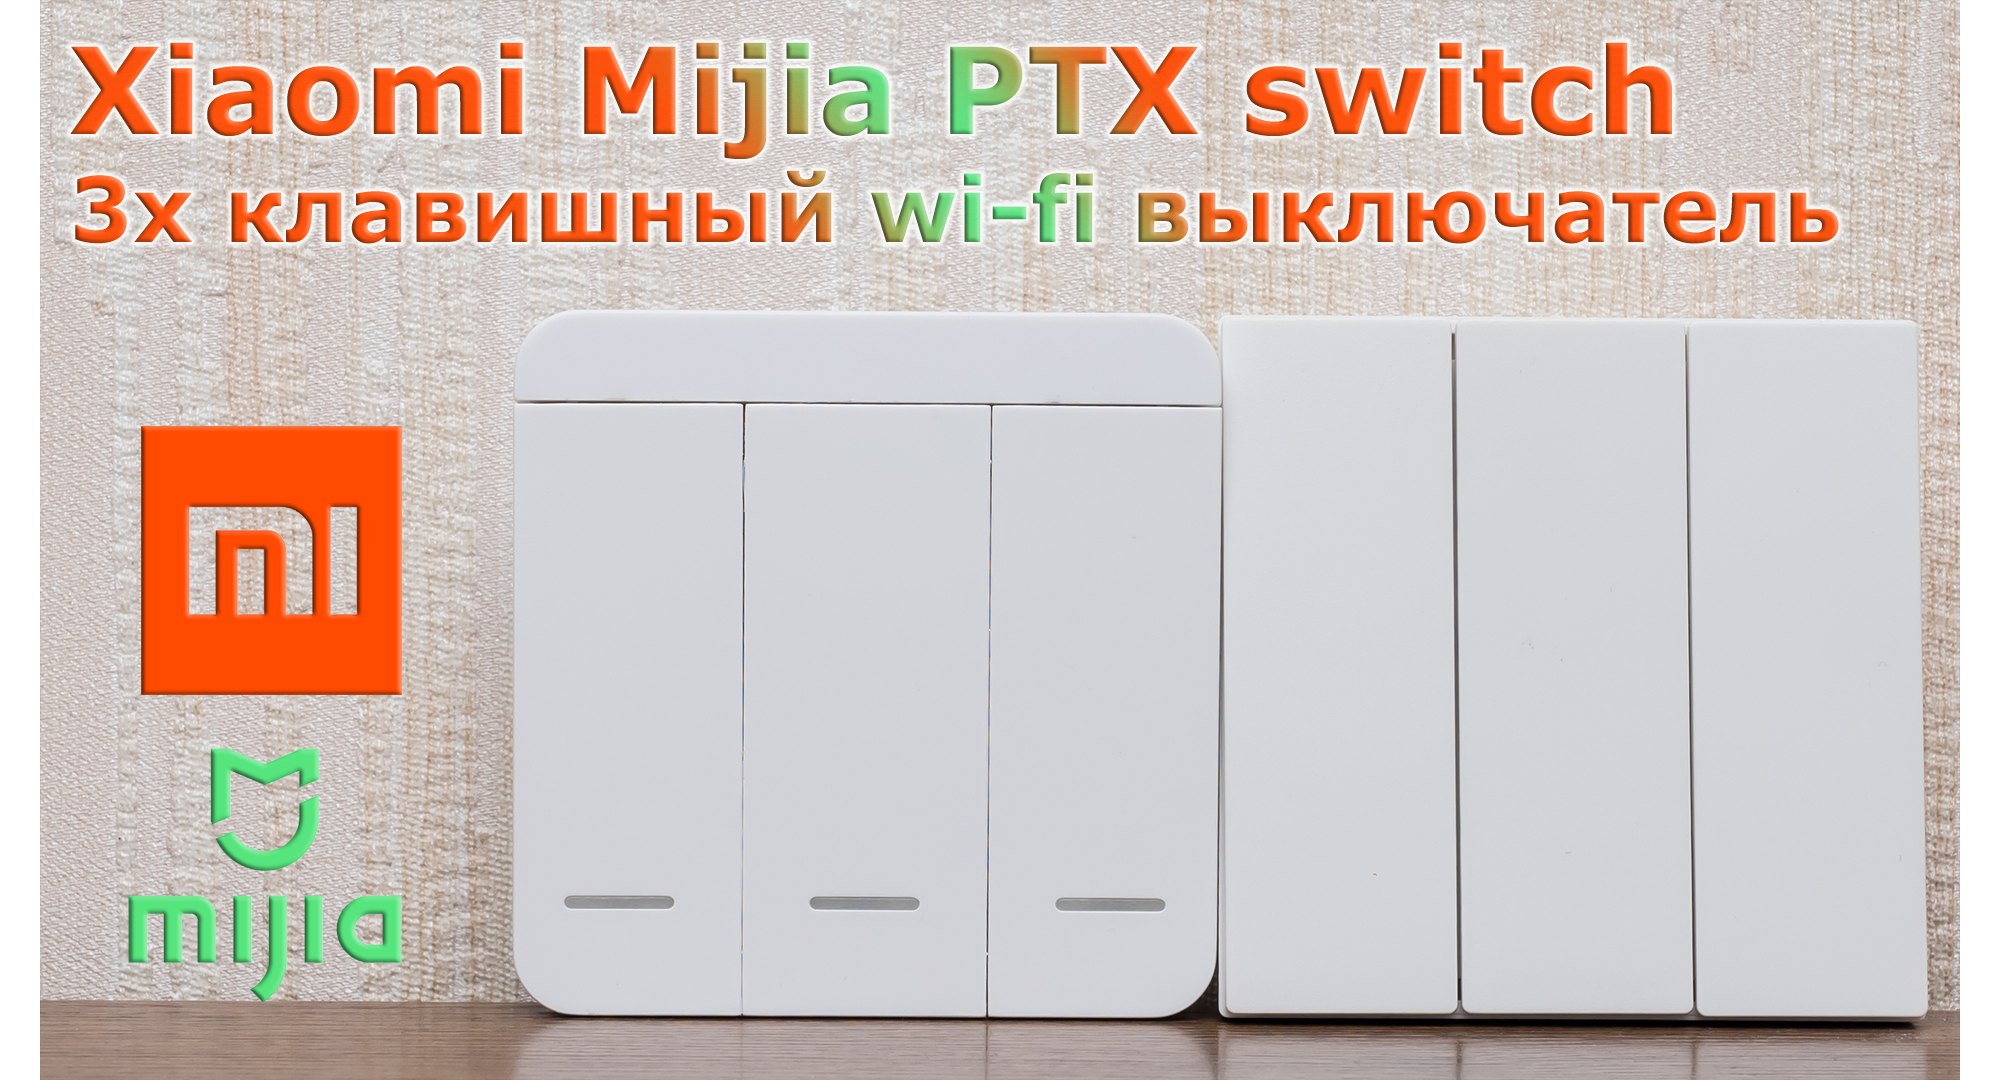 Xiaomi Mijia PTX switch: مفتاح Wi-Fi ذكي مع مكرر 19